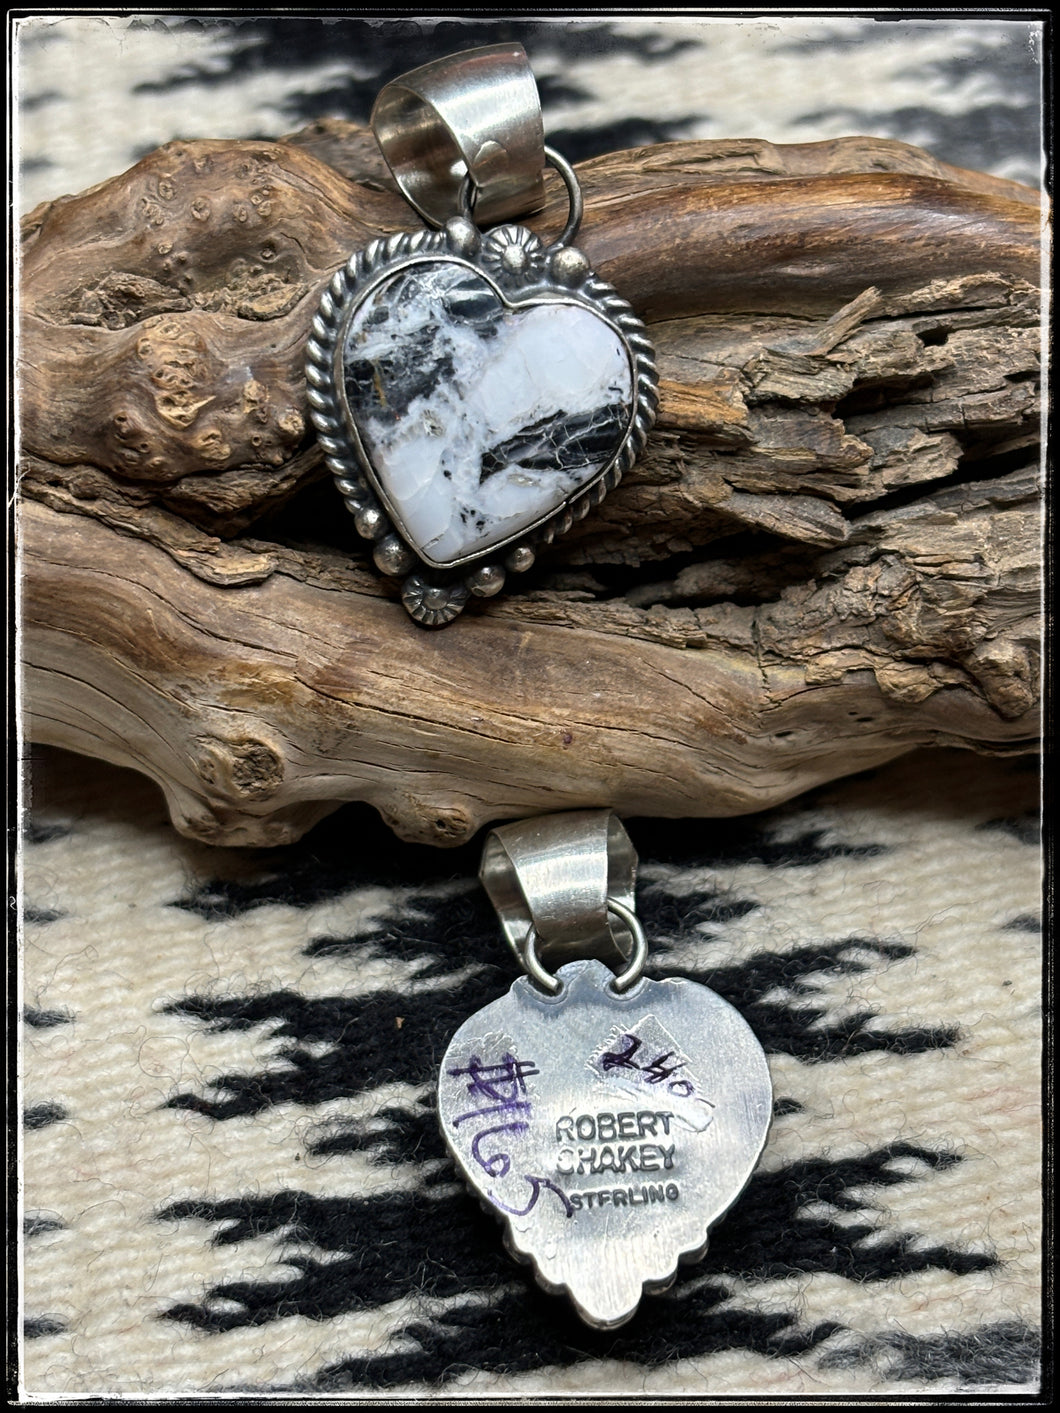 Robert Shakey, Navajo silversmith - white Buffalo heart pendants - hallmark